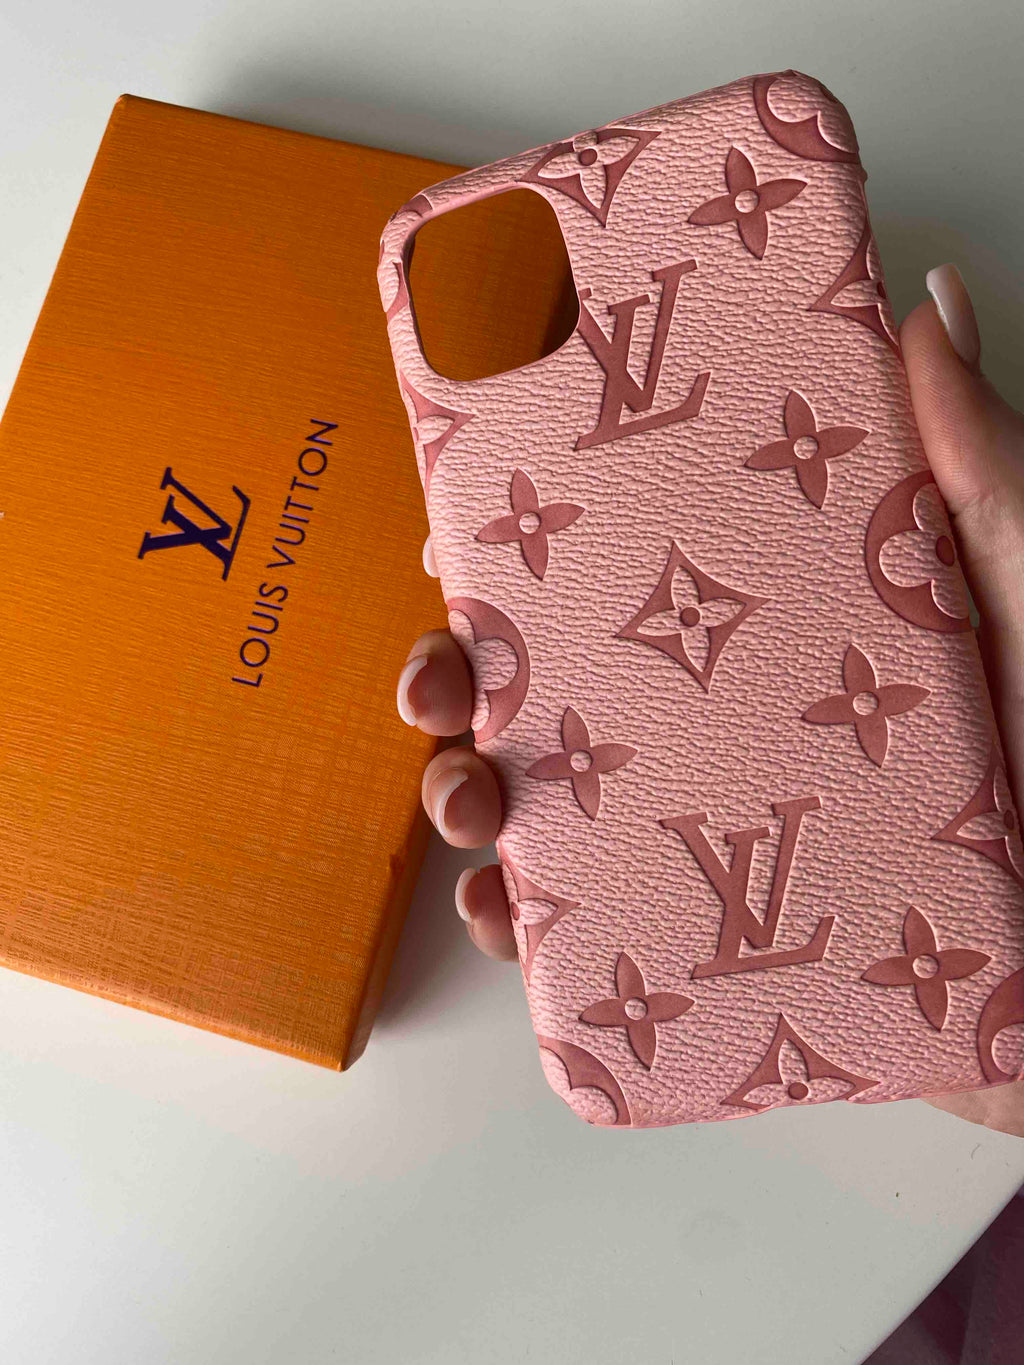 LV White Embossed Fabric Phone Case – JJ Customs